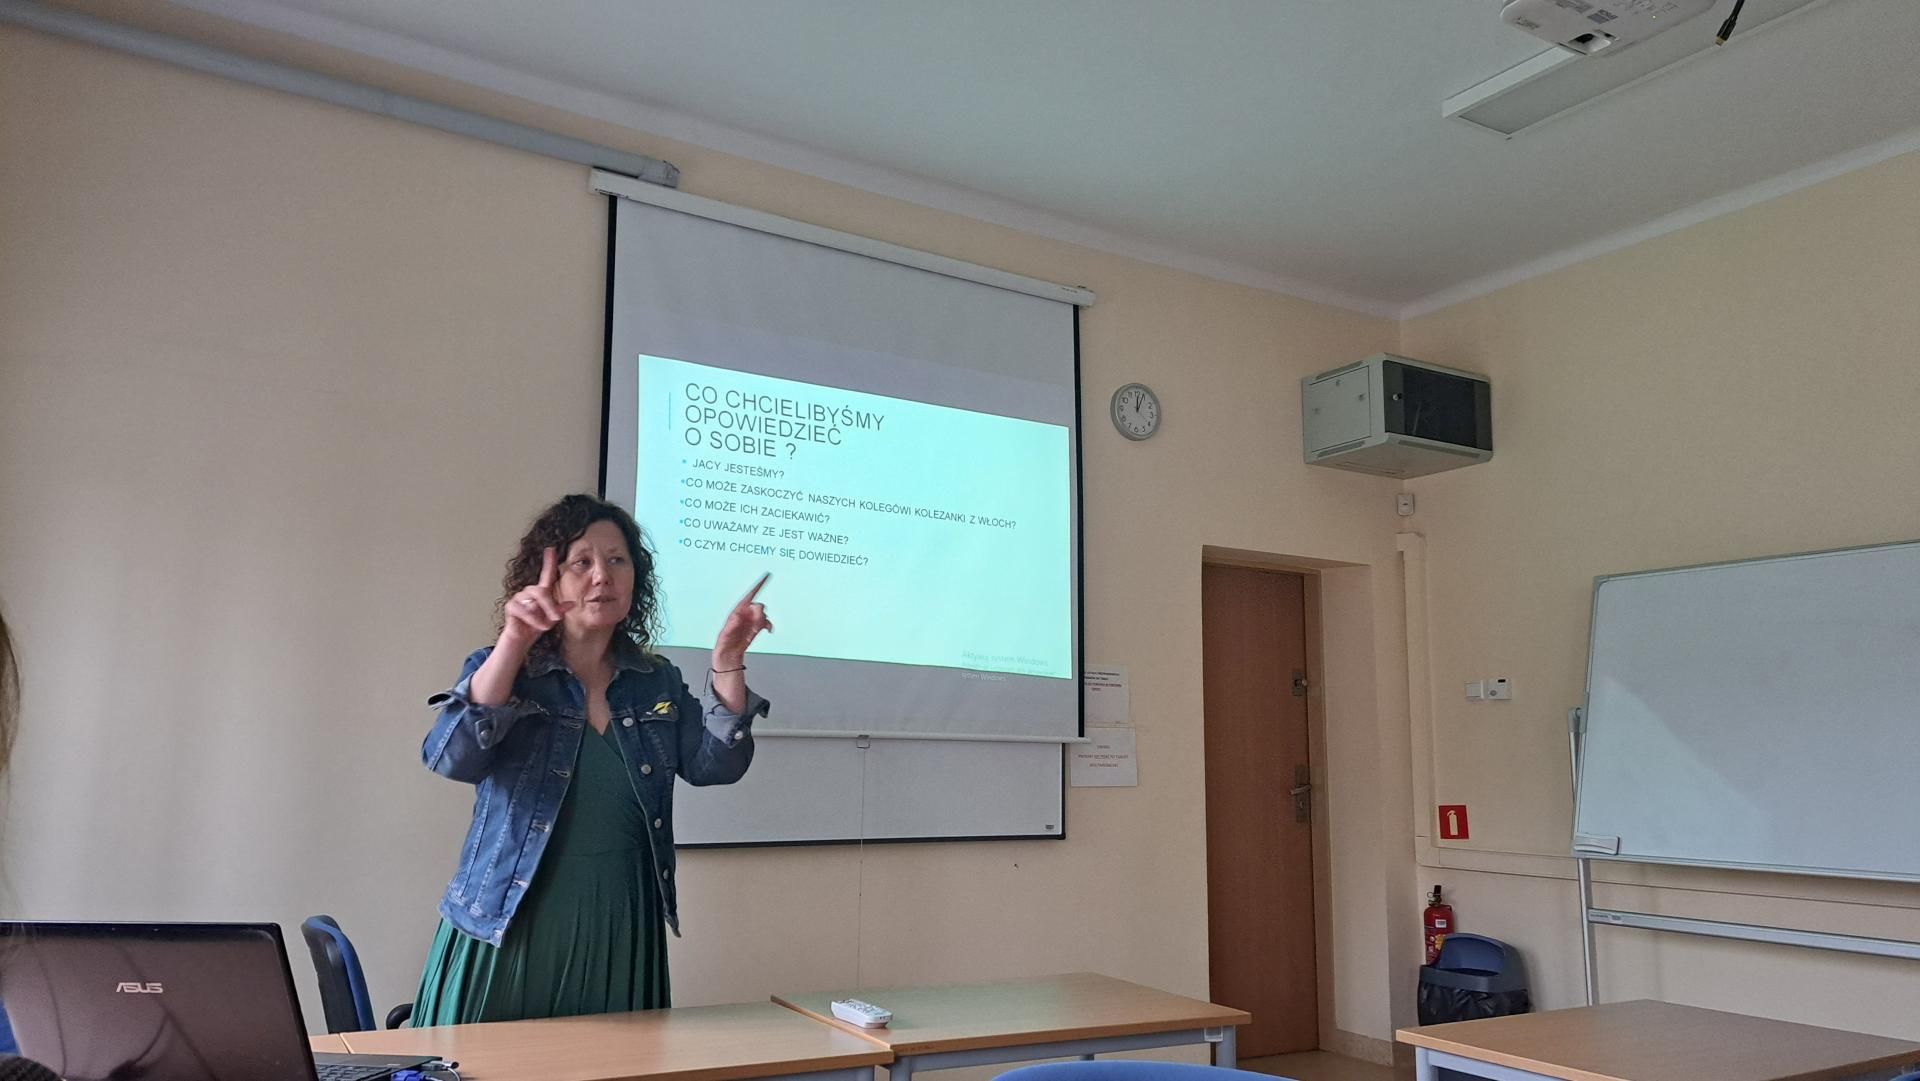 Zdjęcie przedstawia slajd z informacją, że osoba prowadząca wykład mówi o programie Erasmus+. Na slajdzie widnieje tytuł "Program Erasmus+". Osoba prowadząca wykład jest widoczna na tle slajdu.